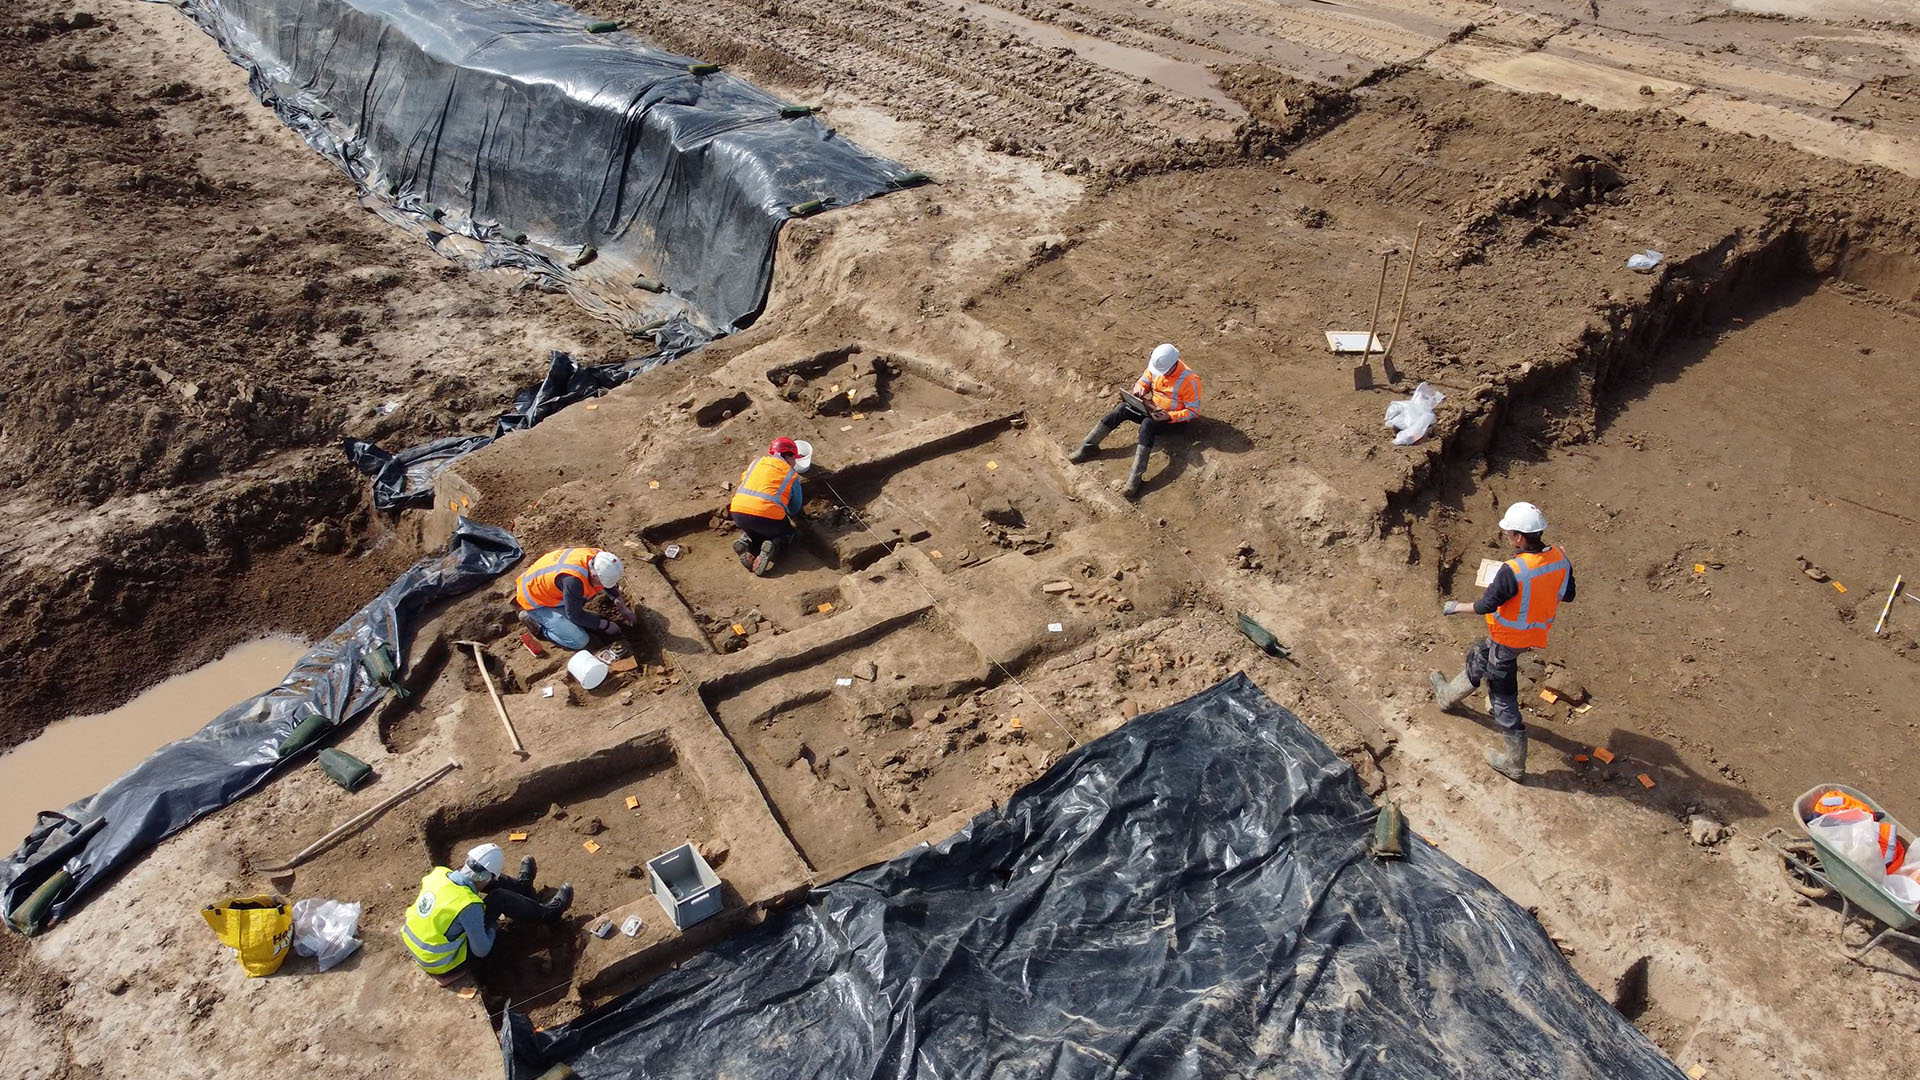 Archäologen haben im niederländischen Herwen-Hemelingeine fast vollständig erhaltene römische Tempelanlage gefunden. | Archäologisches Forschungsinstitut RAAP/dpa